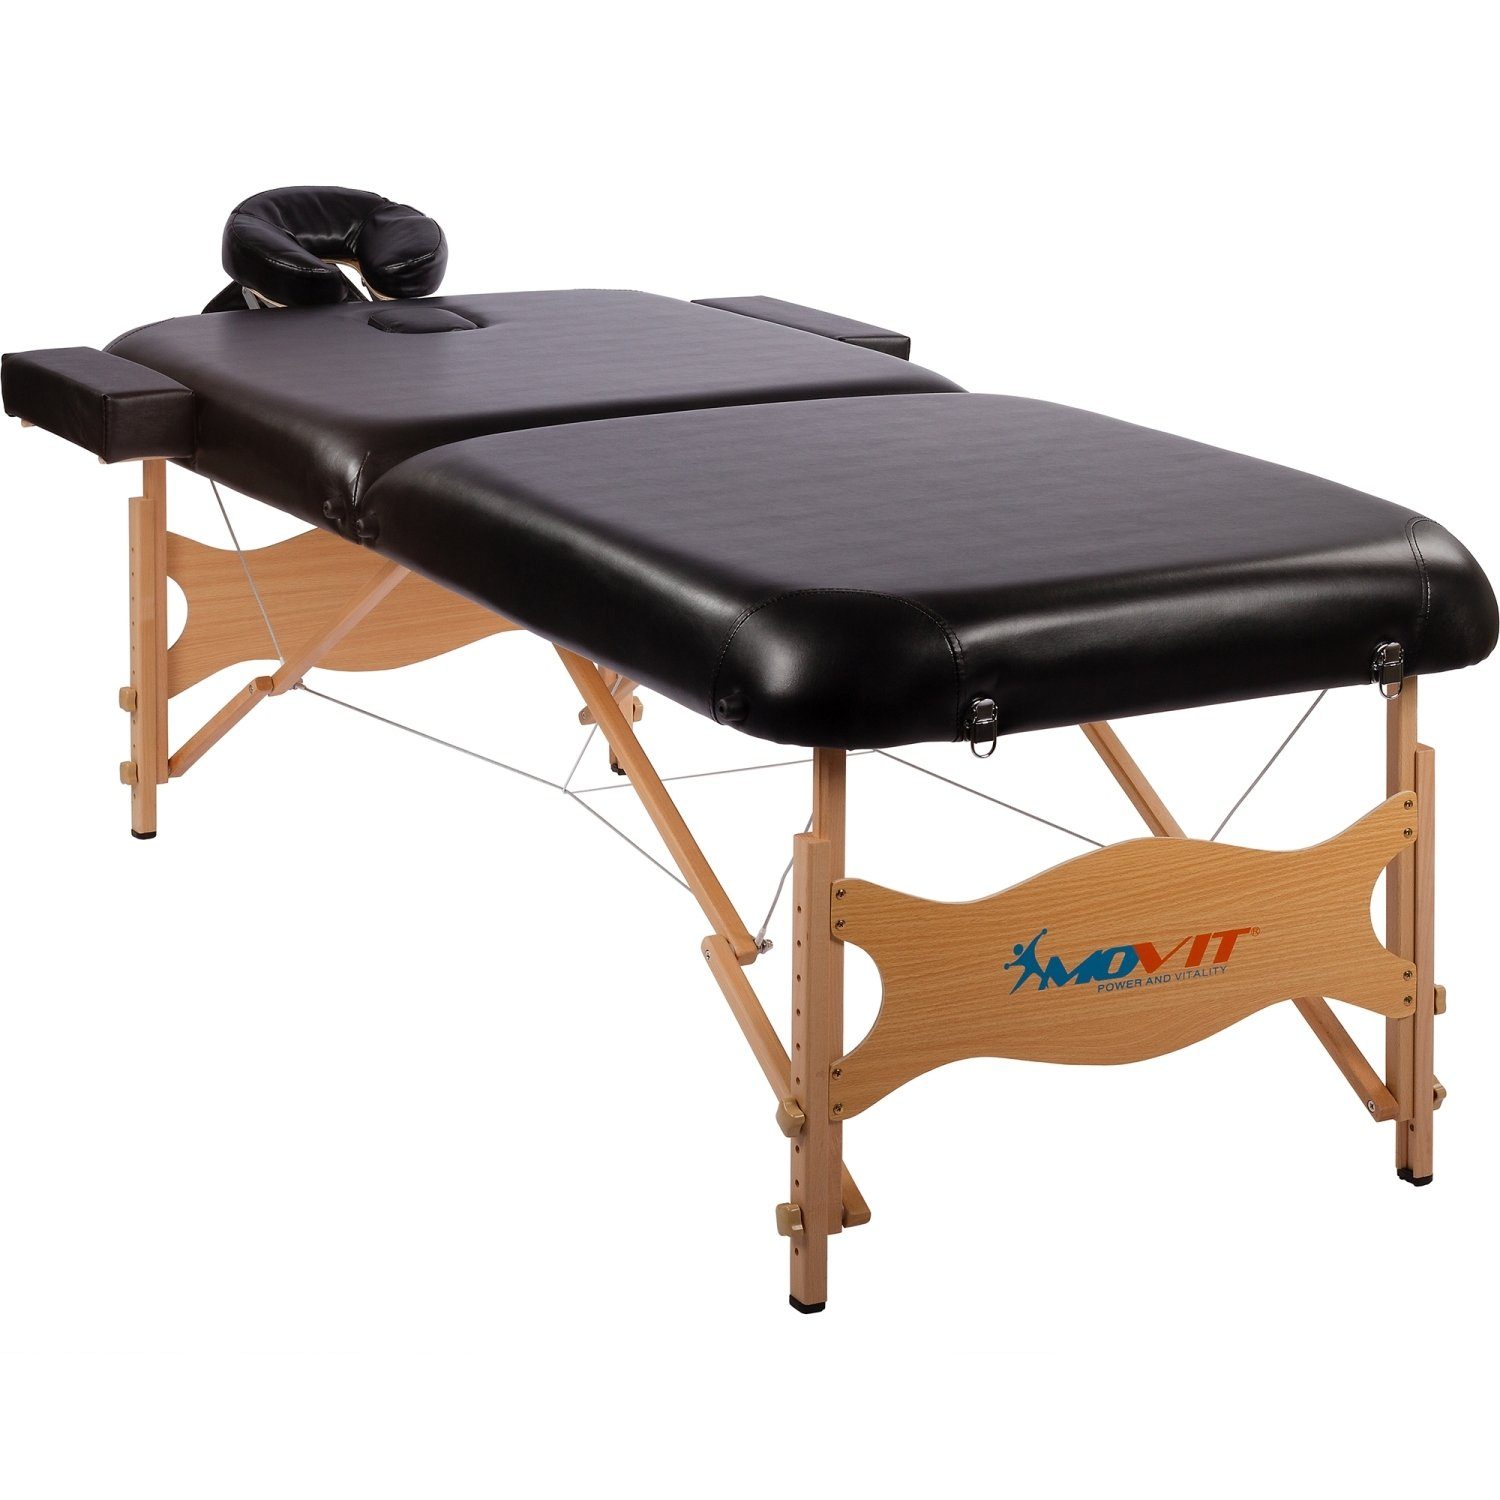 MOVIT Massageliege Movit® Deluxe Massageliege Mobile Therapieliege, inklusive Tasche, XXL, 8 cm Polsterung, Vollholzgestell, Farbwahl